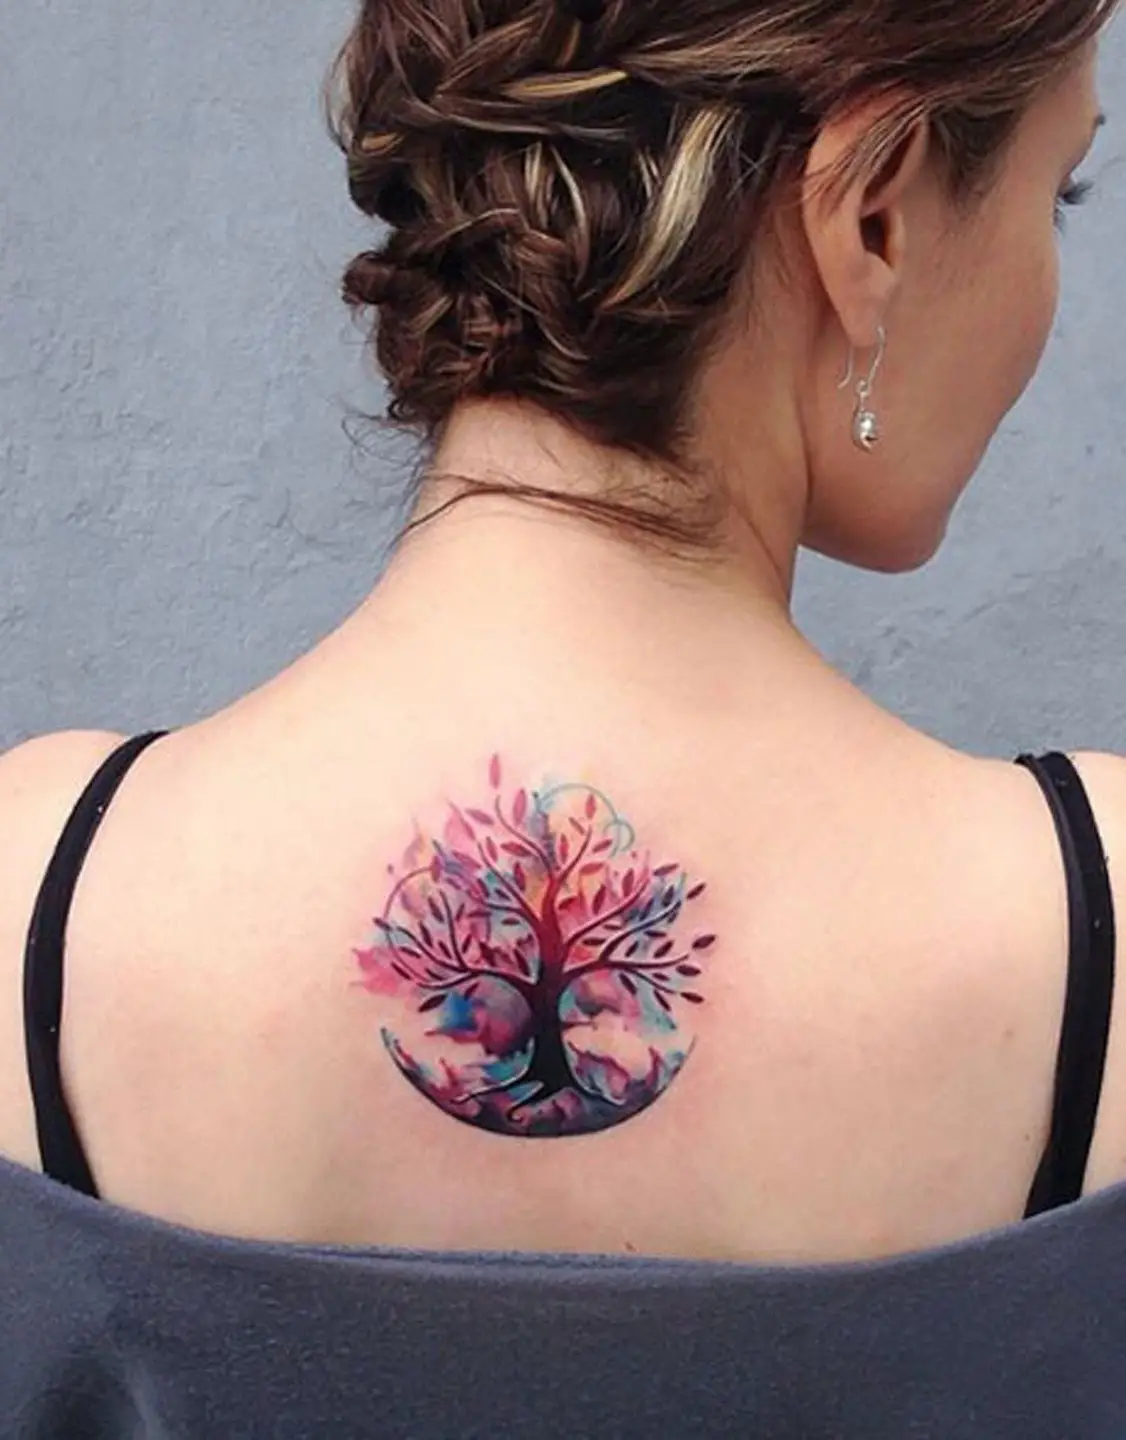 30 Ideas de Tatuajes del Árbol de la vida y sus significados